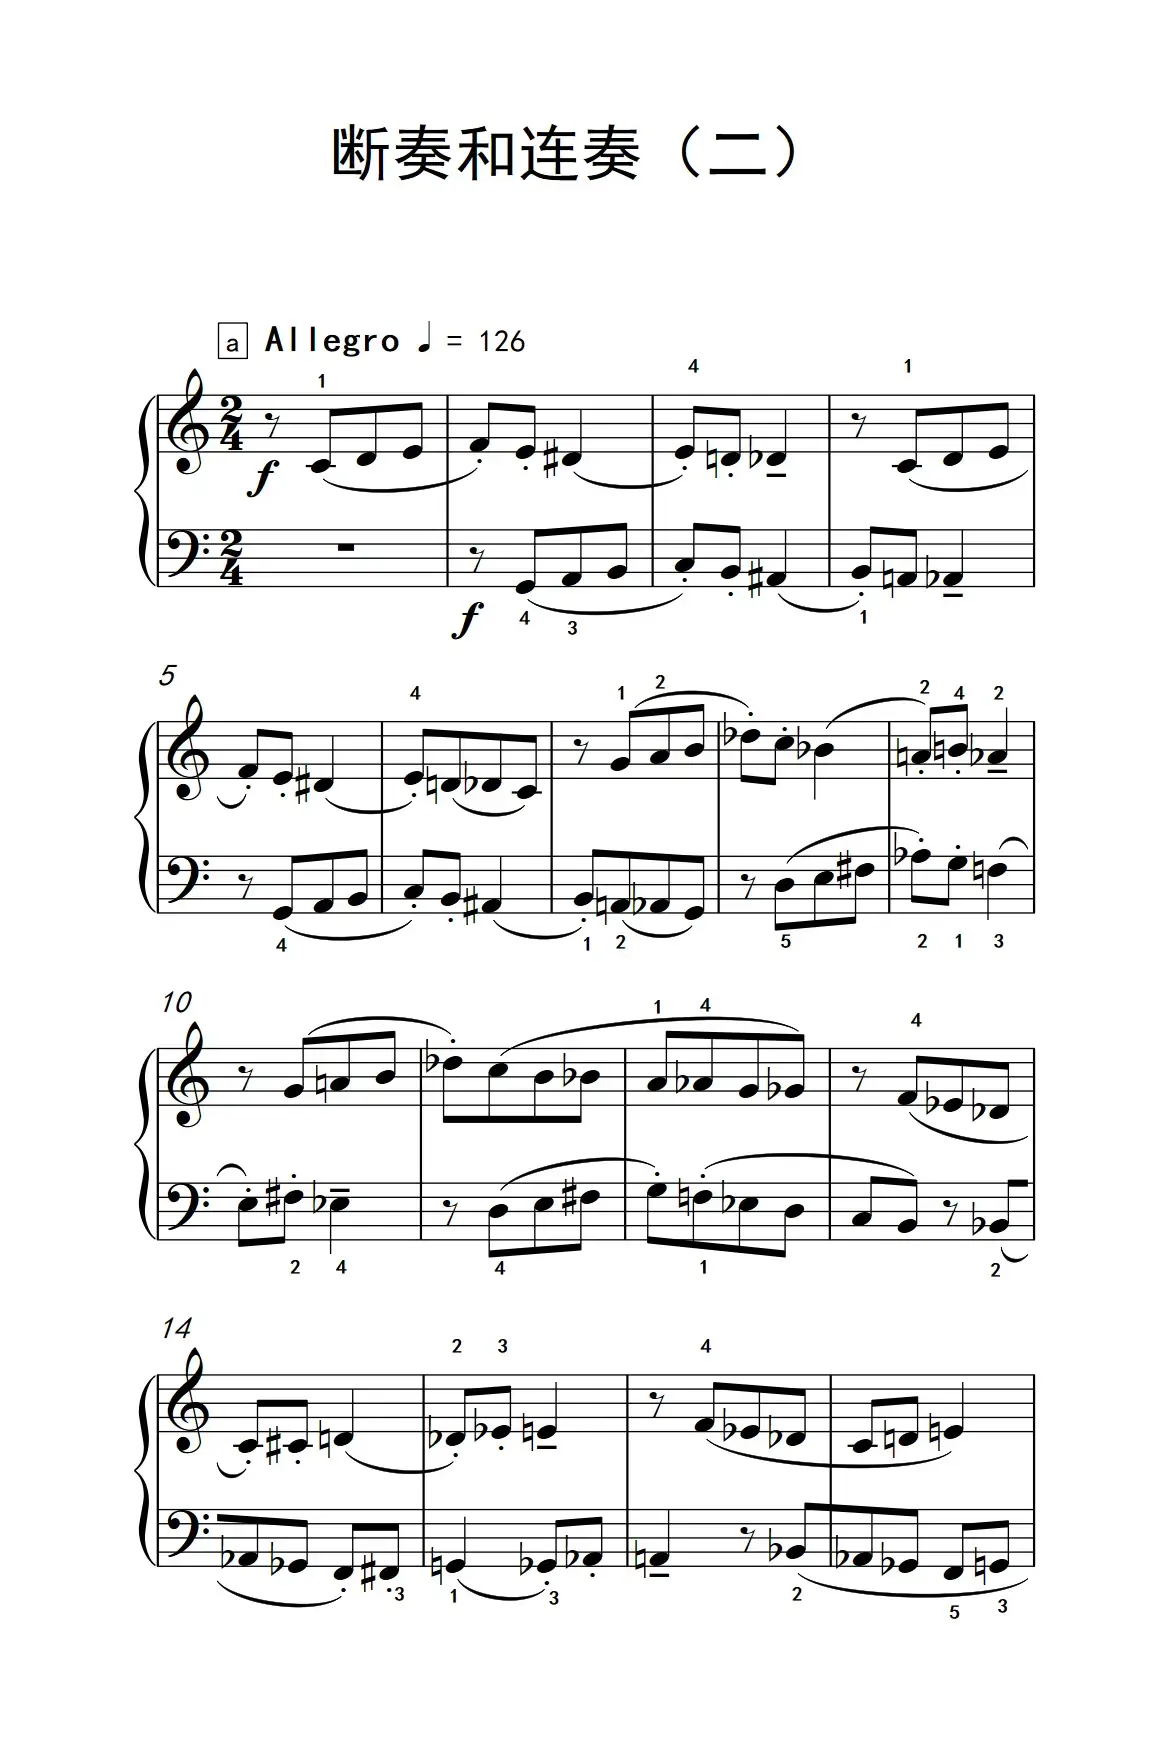 断奏和连奏（二）（巴托克 小宇宙 钢琴教程 5）